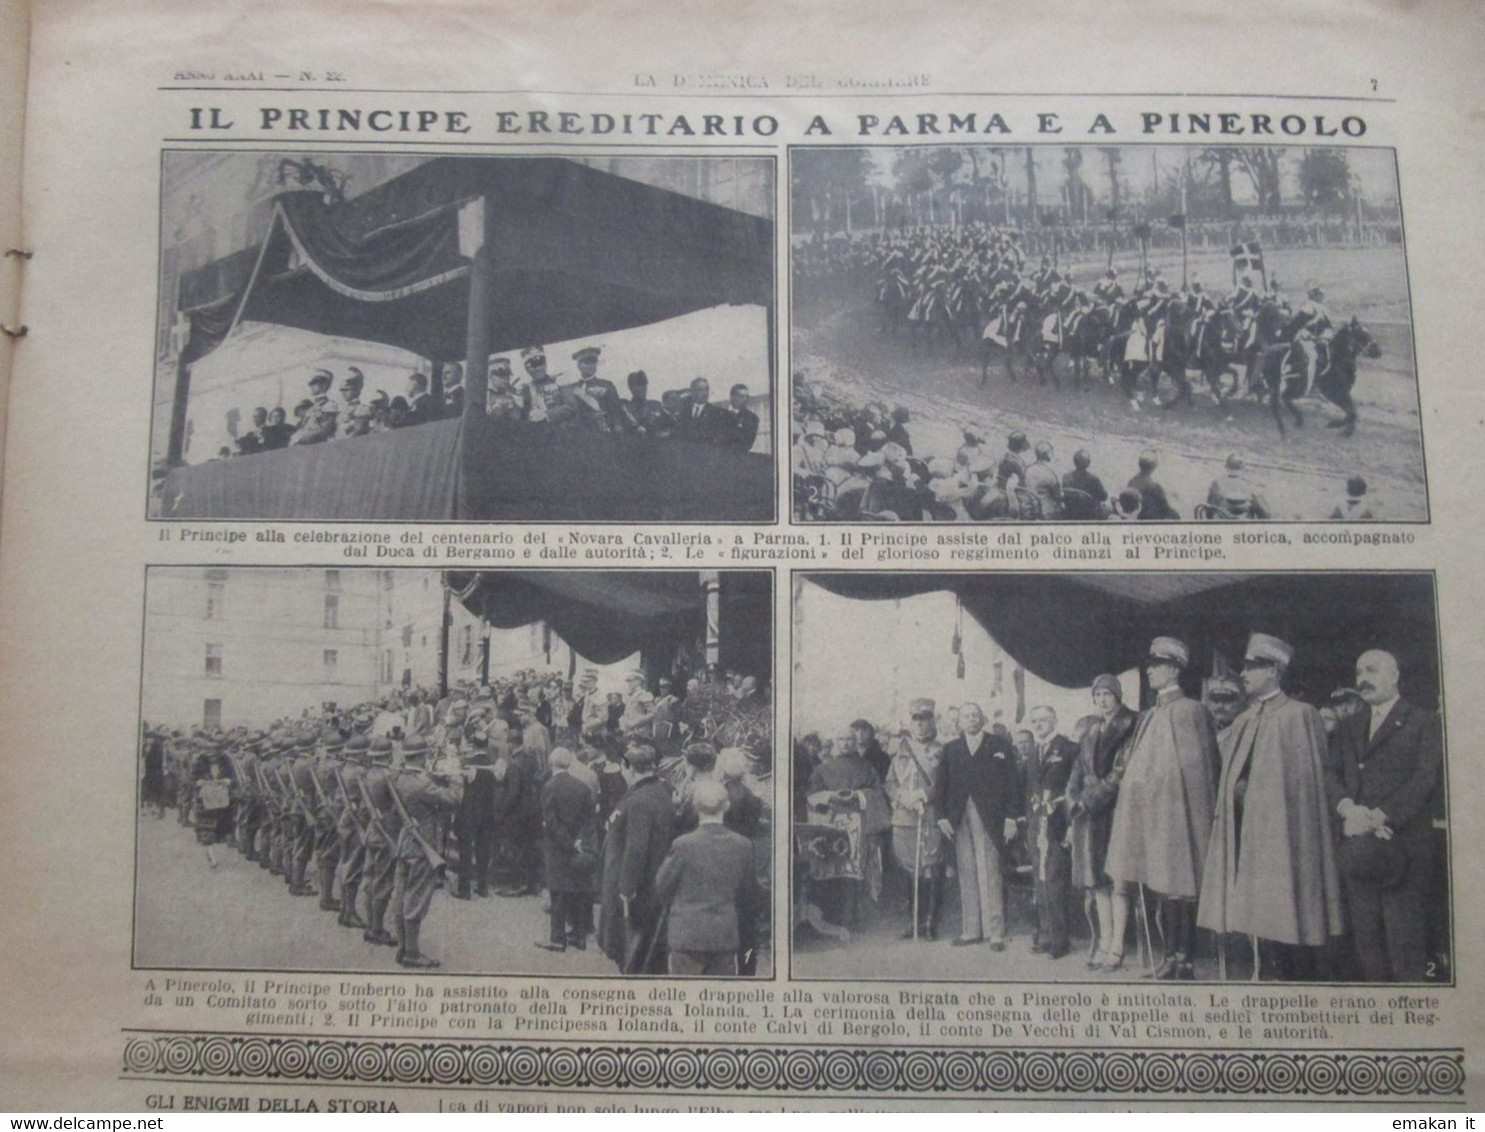 # DOMENICA DEL CORRIERE N 22 1929 SOVRANI D'ITALIA A RODI / CAPRINO VERONESE / PARMA / PINEROLO - First Editions